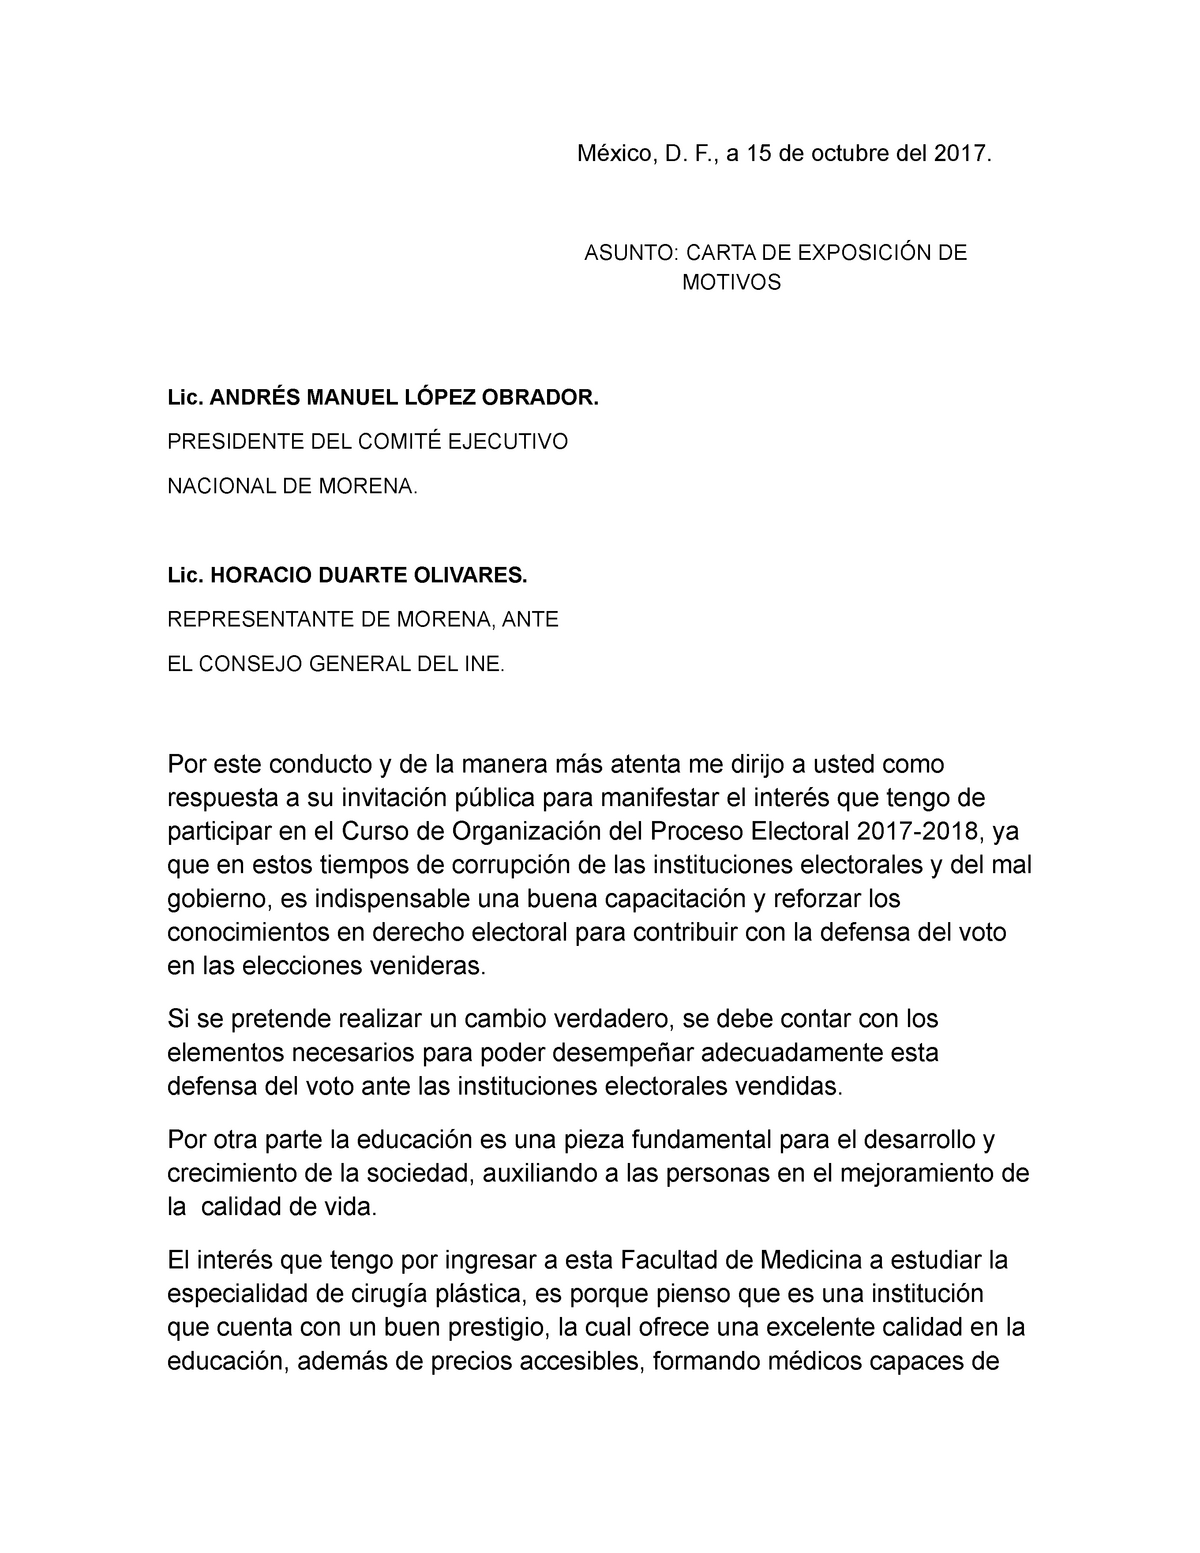 Carta de exposición de motivos - UNAM - StuDocu